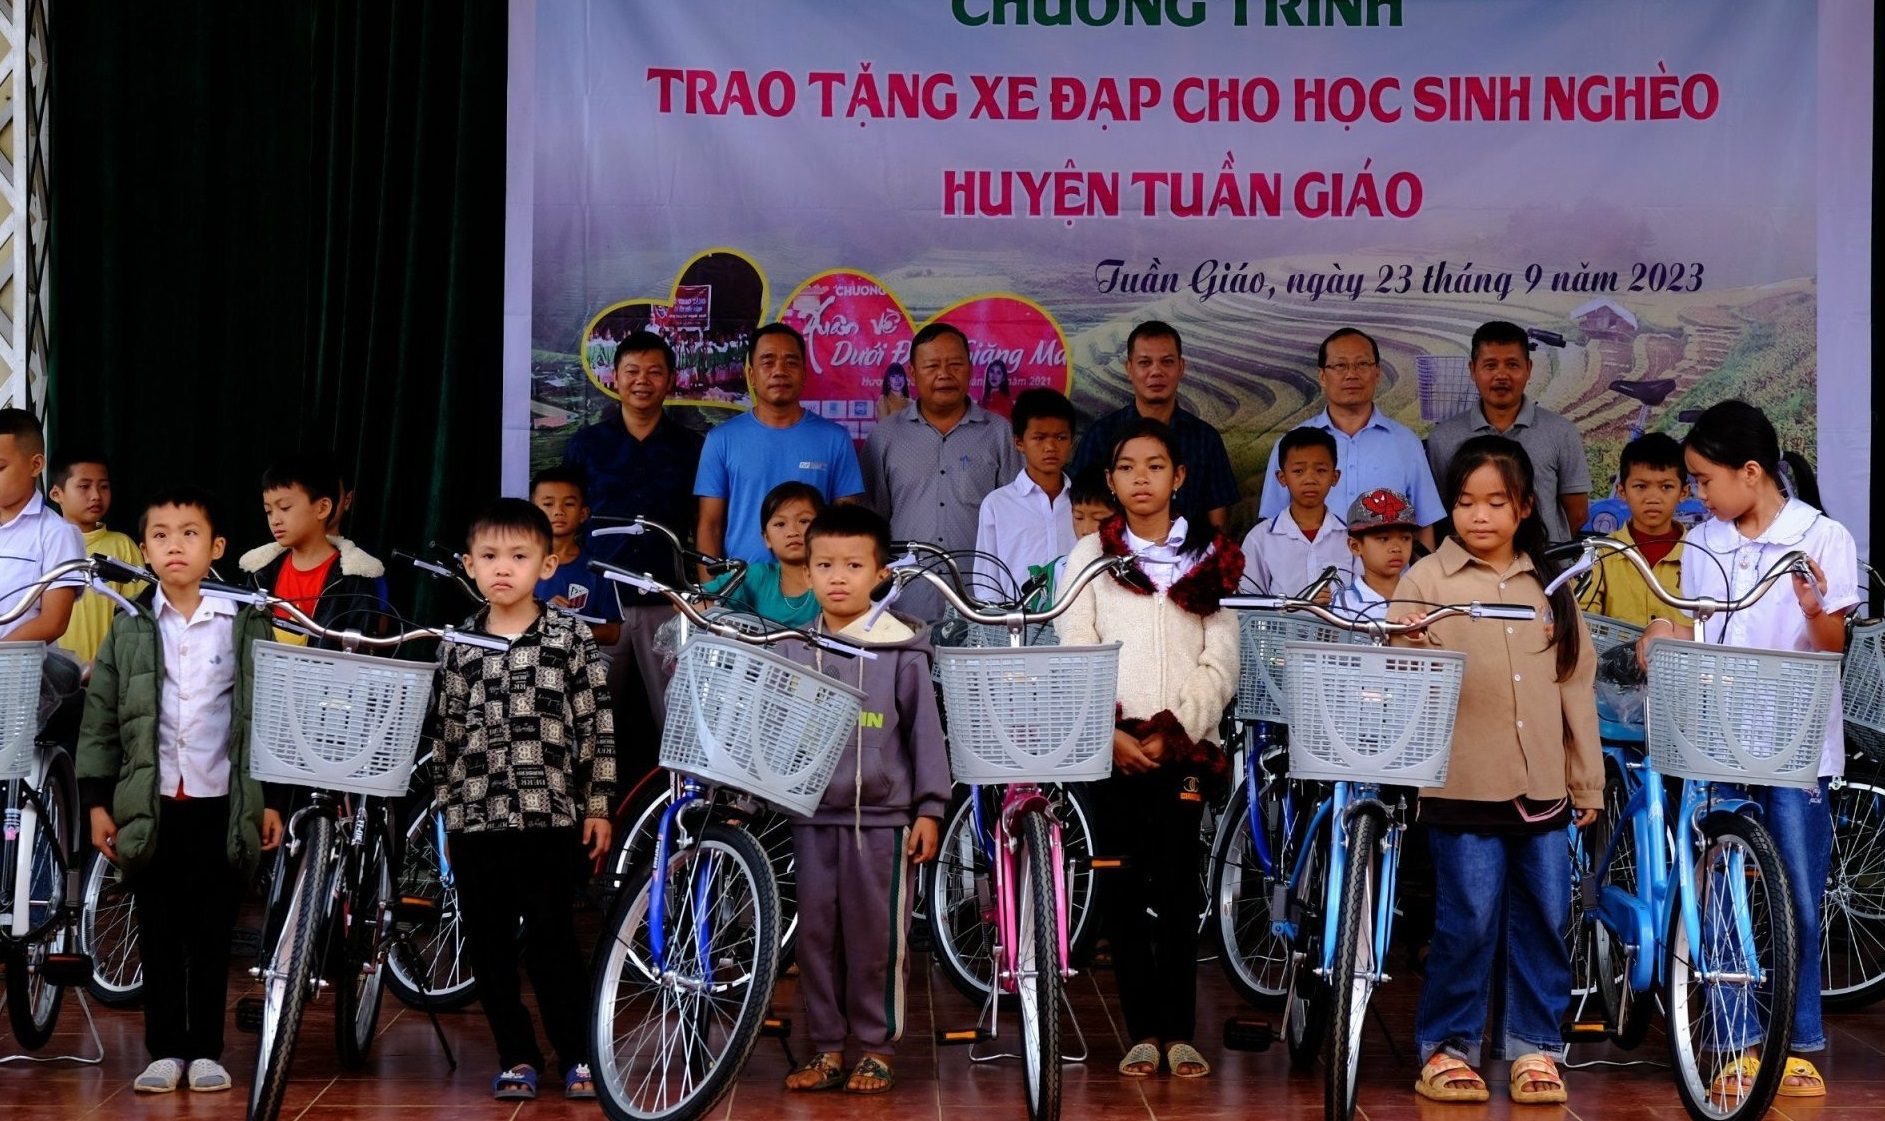 Qua sự kết nối của Báo Giáo dục và Thời đại, hàng trăm học sinh ở xã Pú Nhung, huyện Tuần Giáo, tỉnh Điện Biên đã được nhận những phần quà ý nghĩa trong đầu năm học 2023-2024.